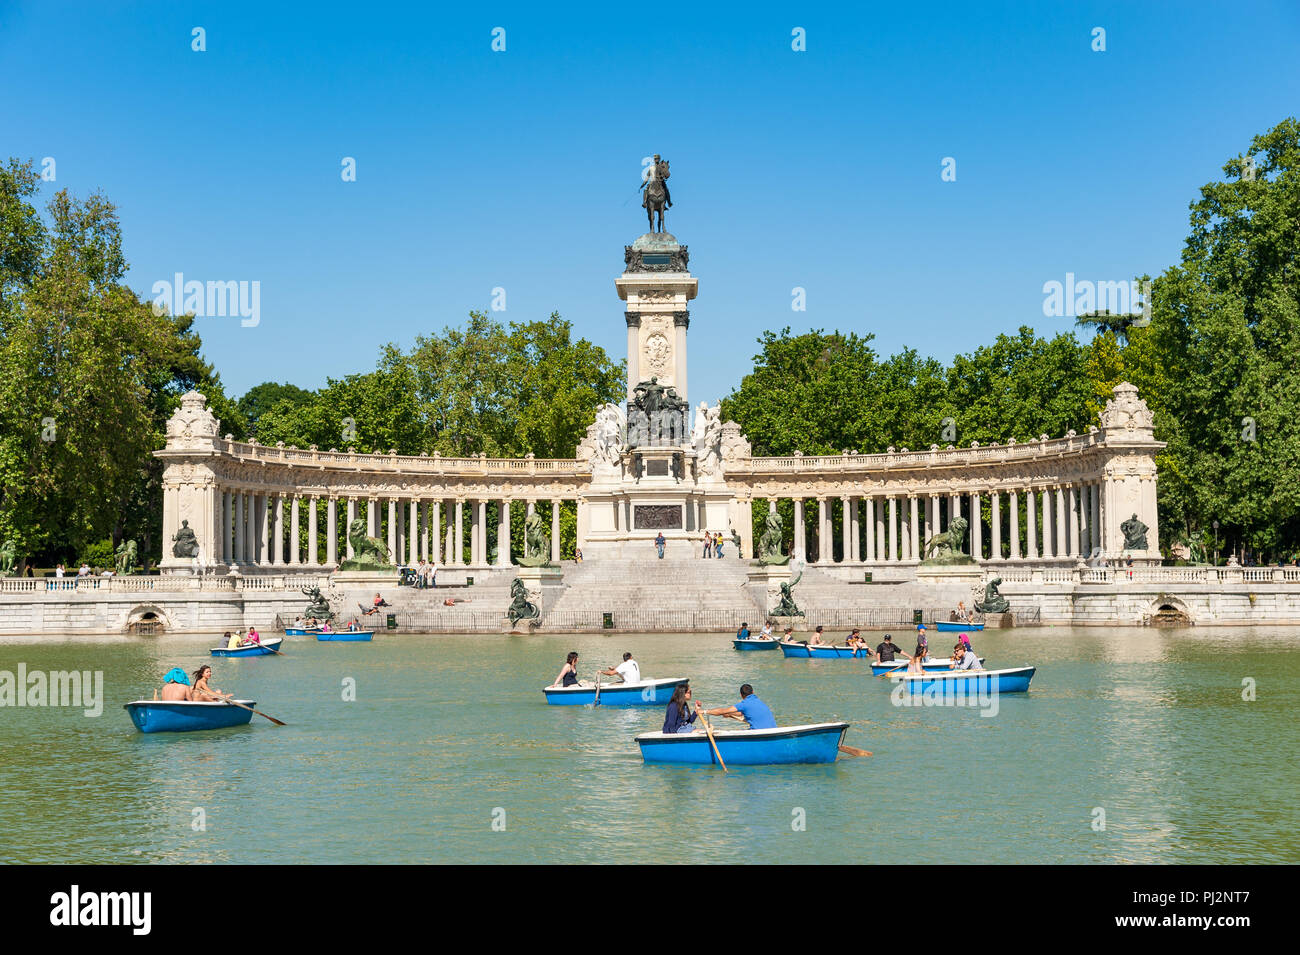 Boating lake in Retiro park, Madrid, Spain Stock Photo